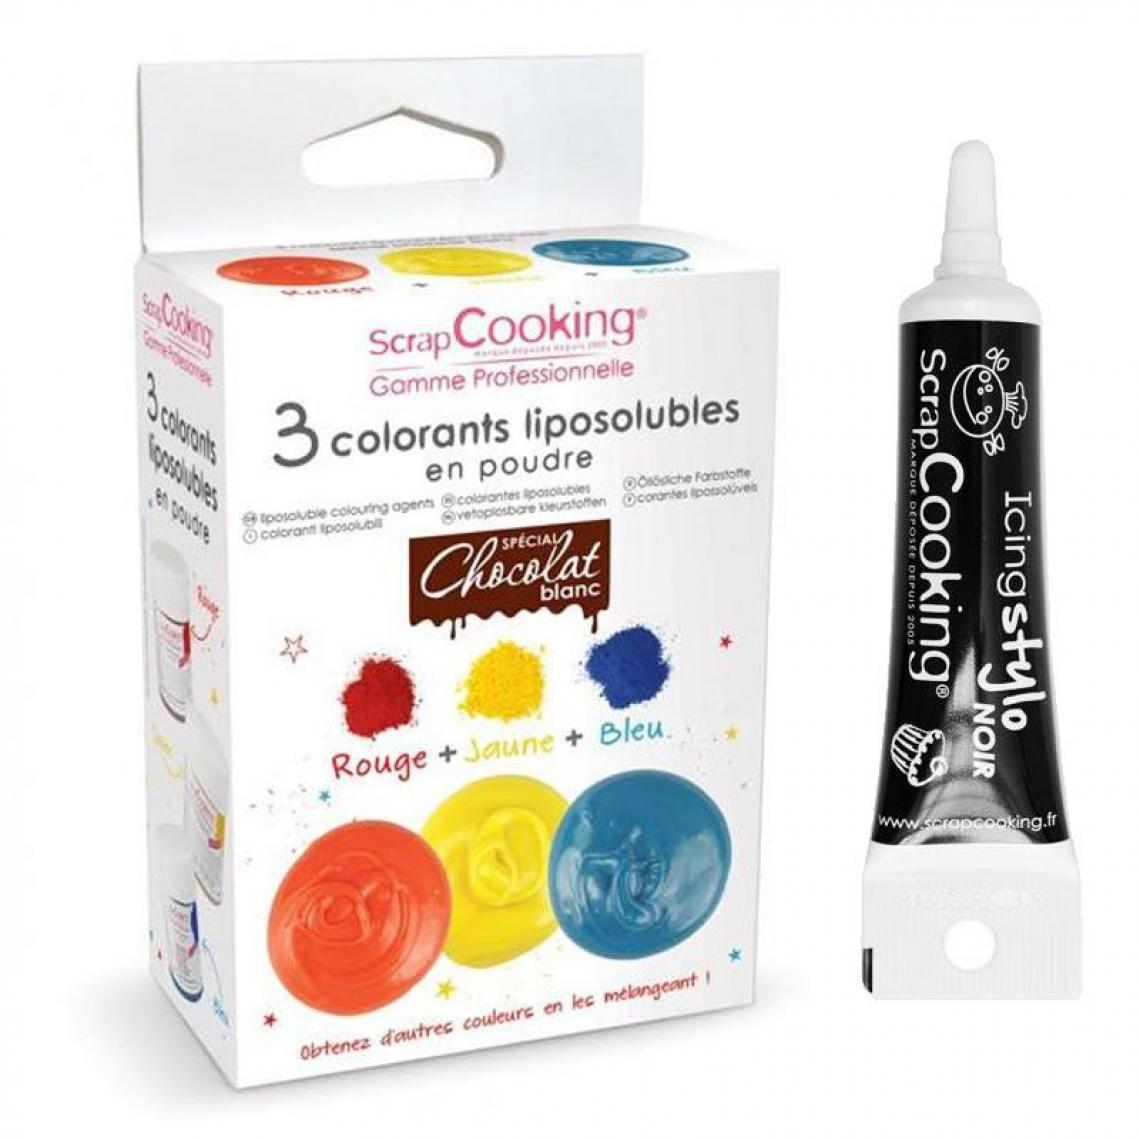 Scrapcooking - 3 colorants liposolubles en poudre + Stylo de glaçage noir - Kits créatifs